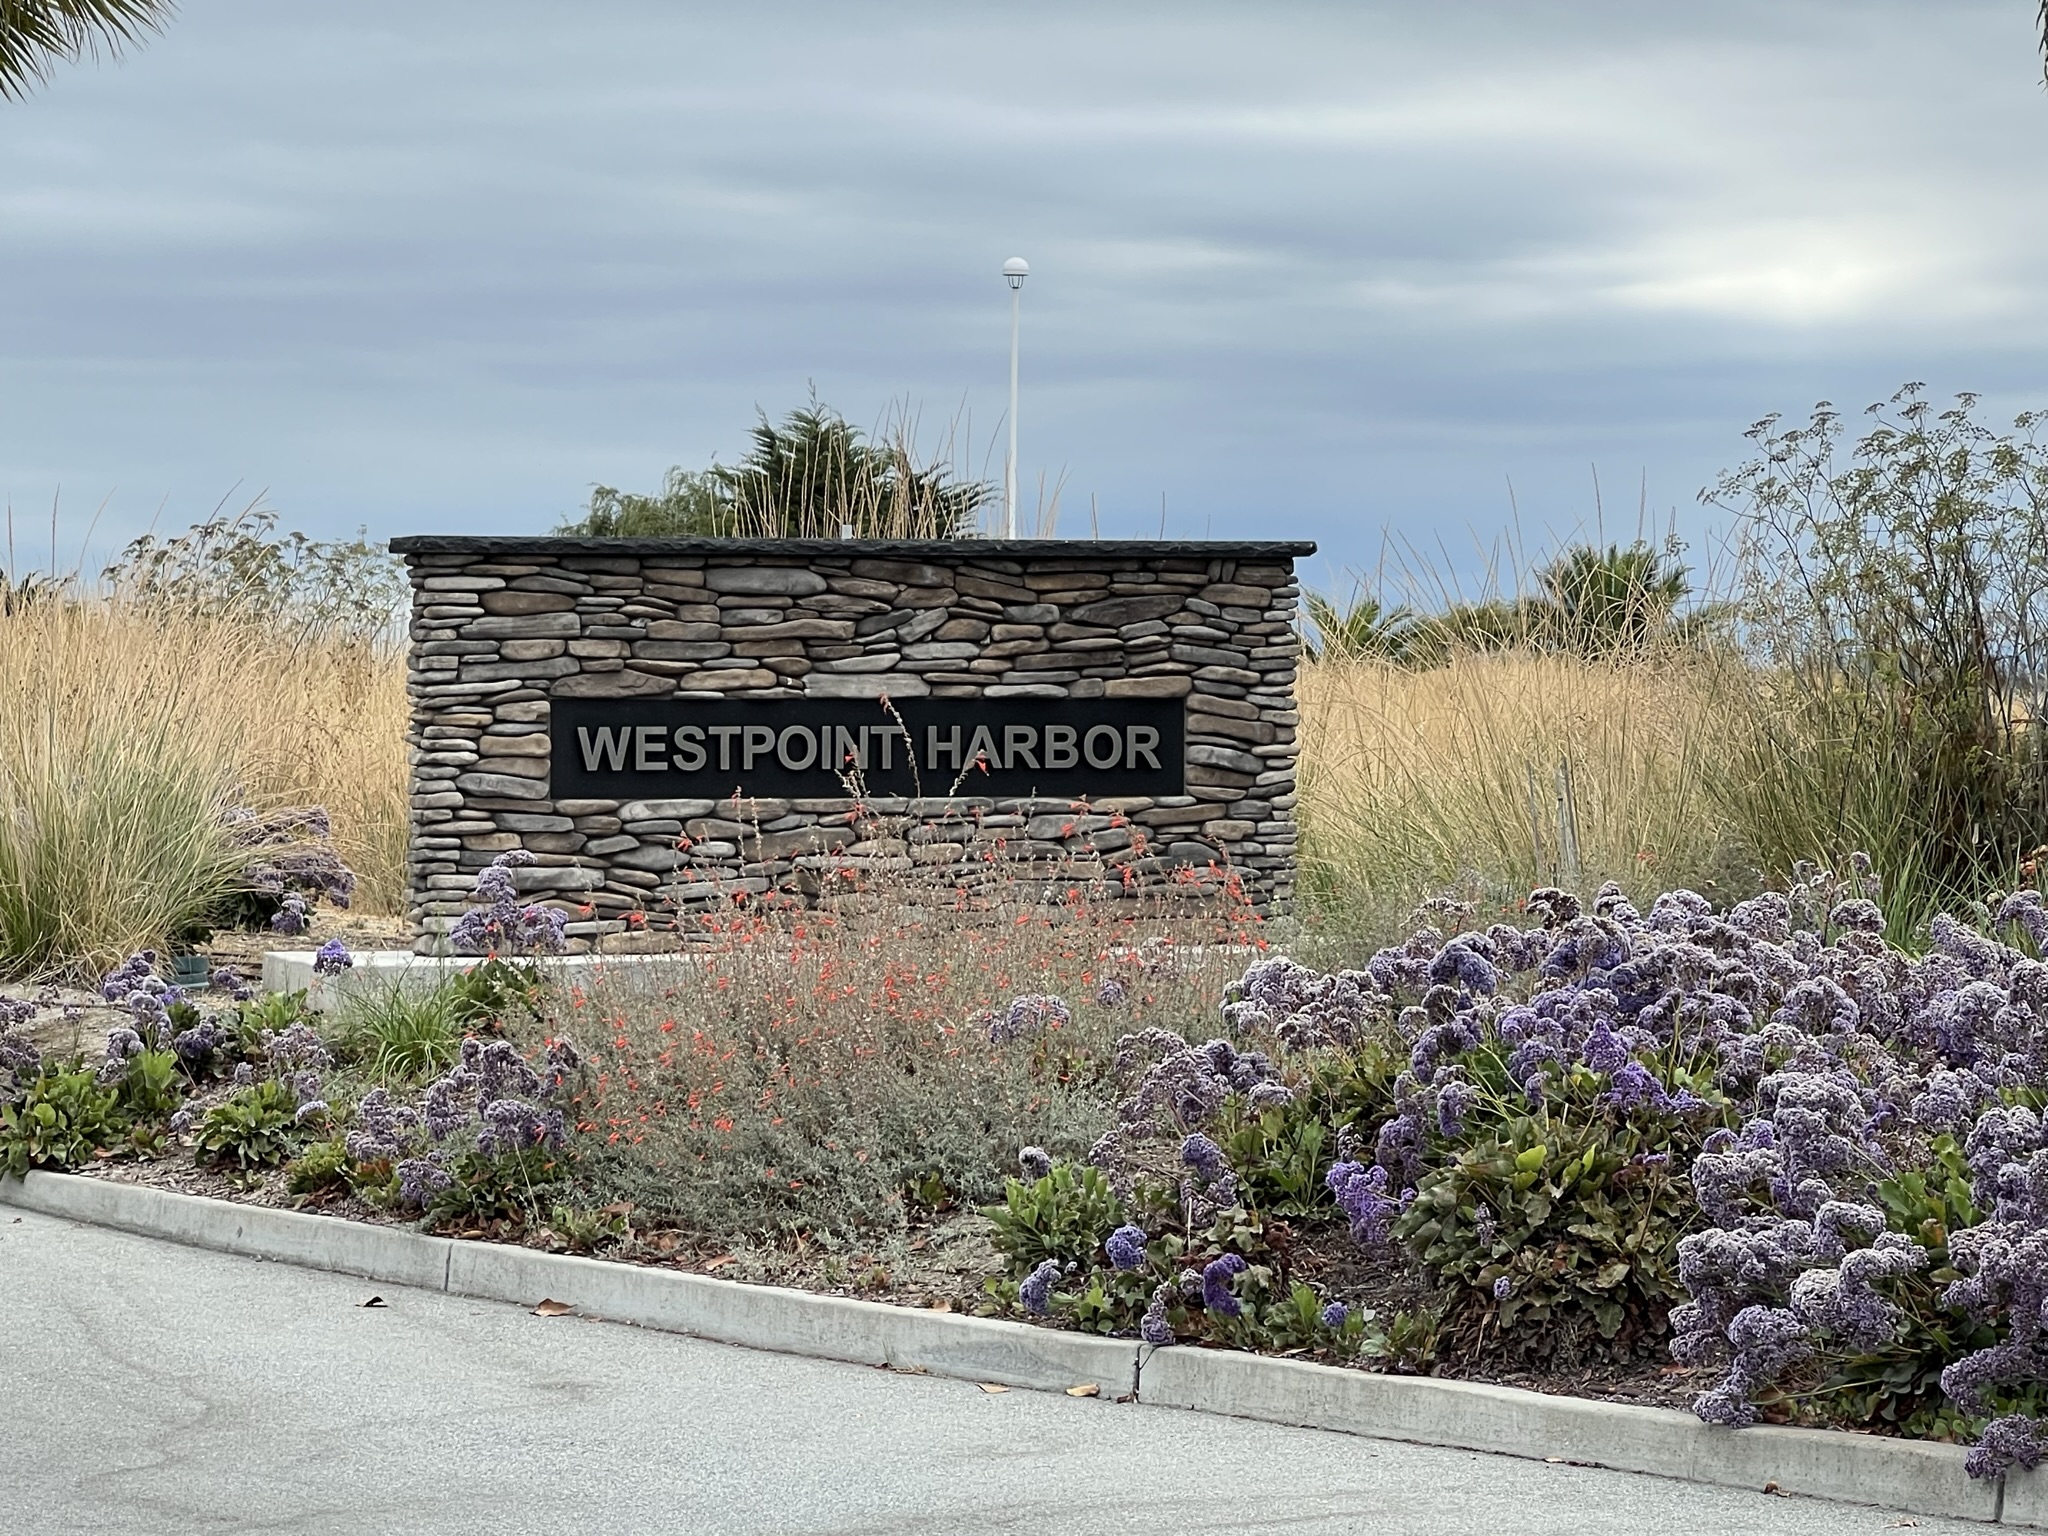 Westpoint Harbor